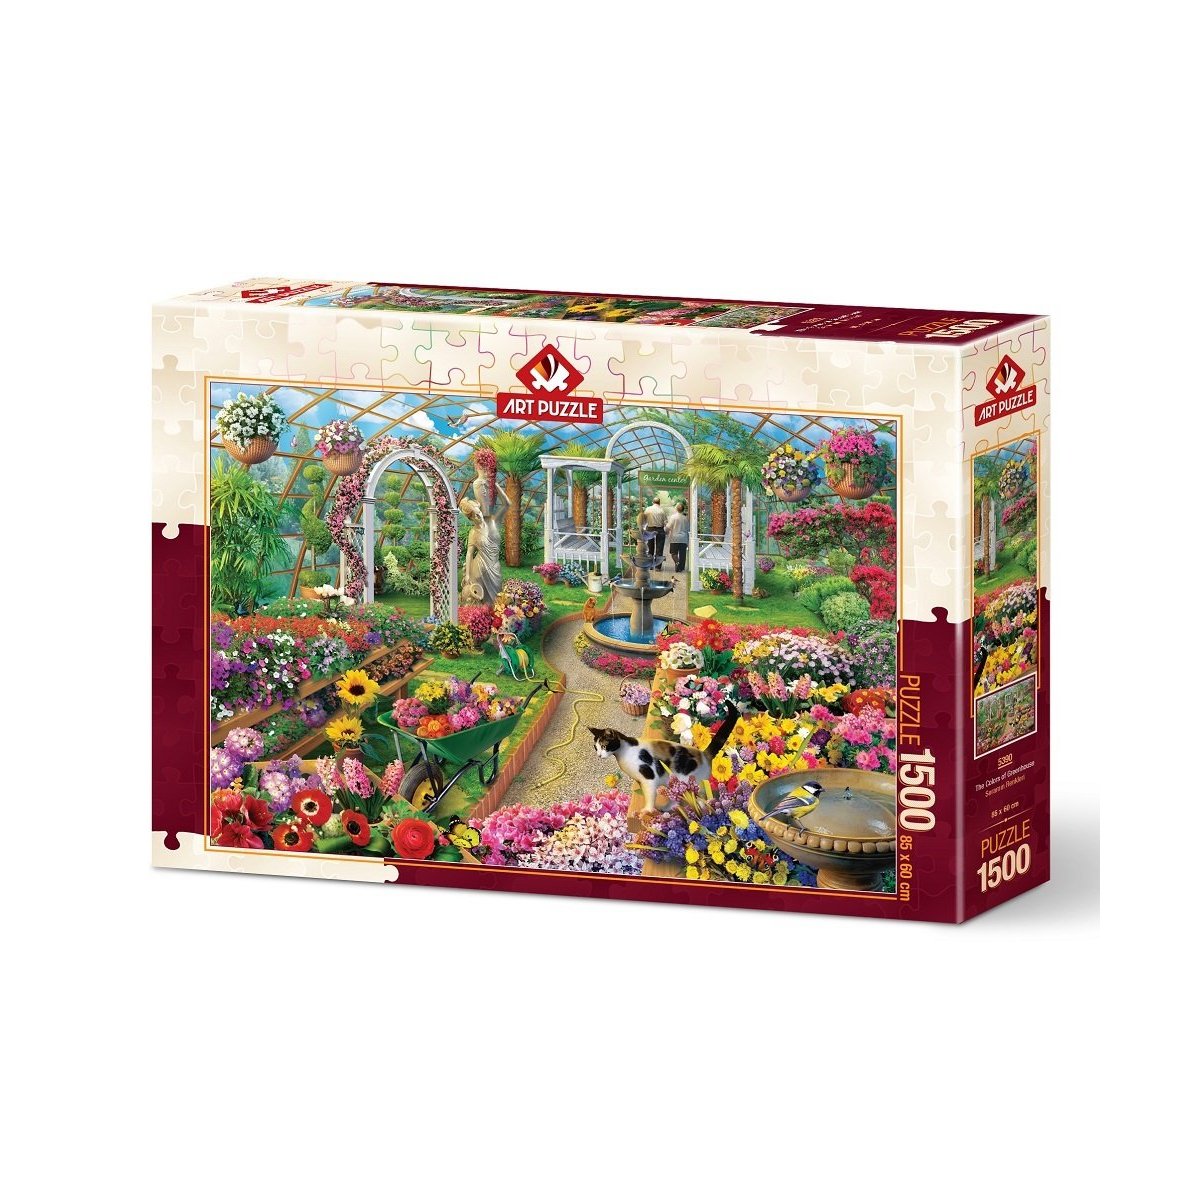 5390 Art Puzzle, Seramın Renkleri 1500 Parça Puzzle